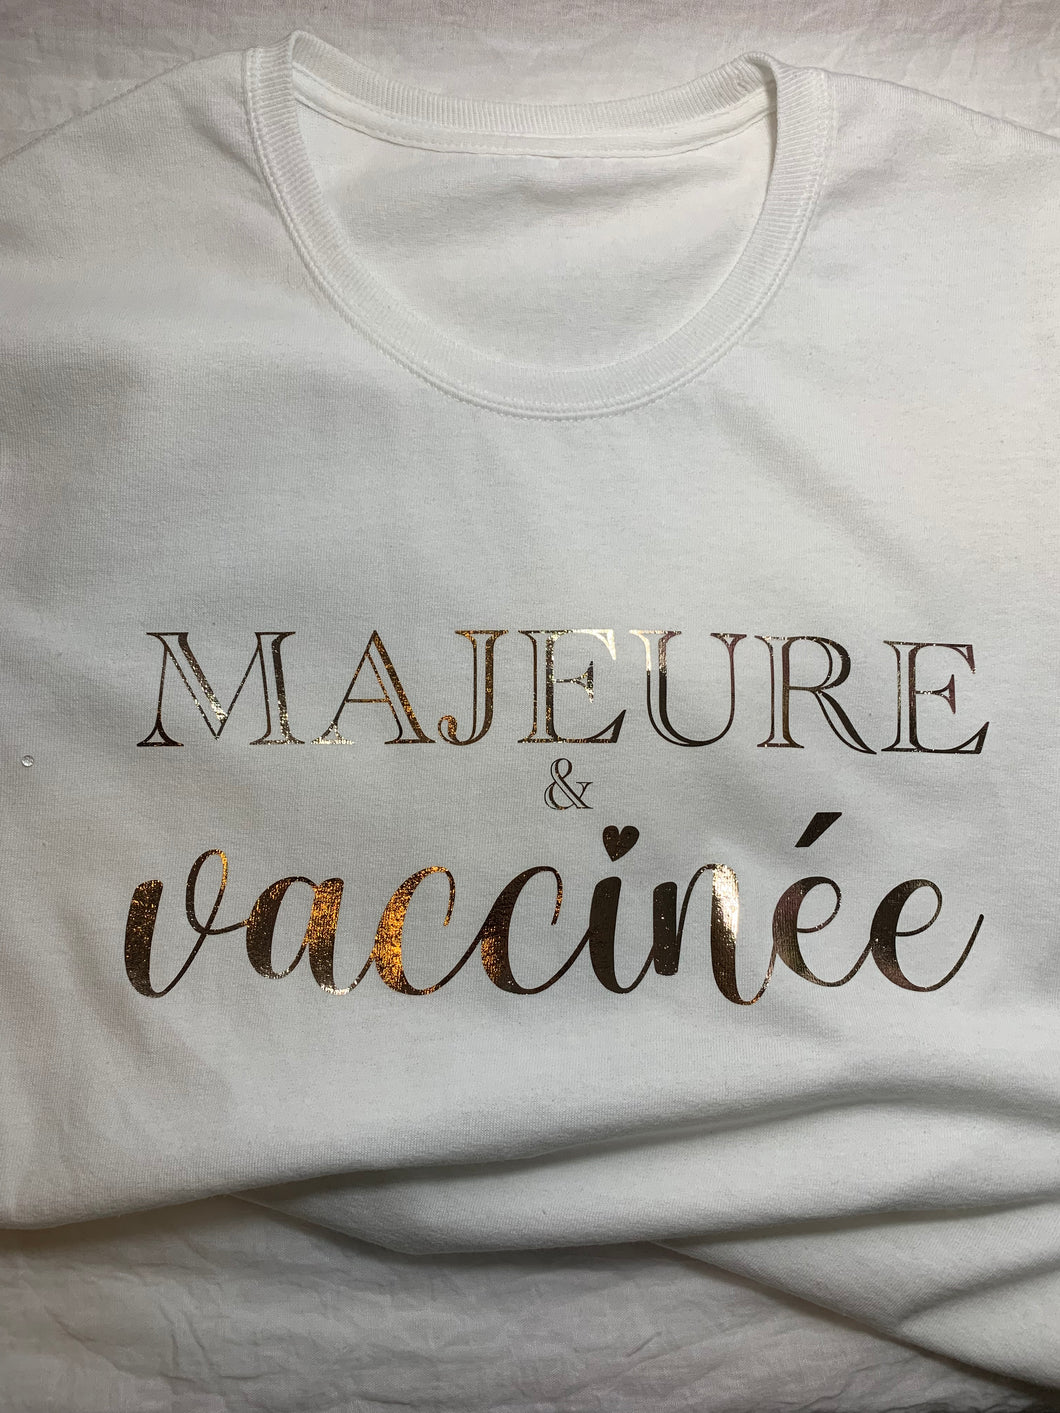 Majeure et vaccinée